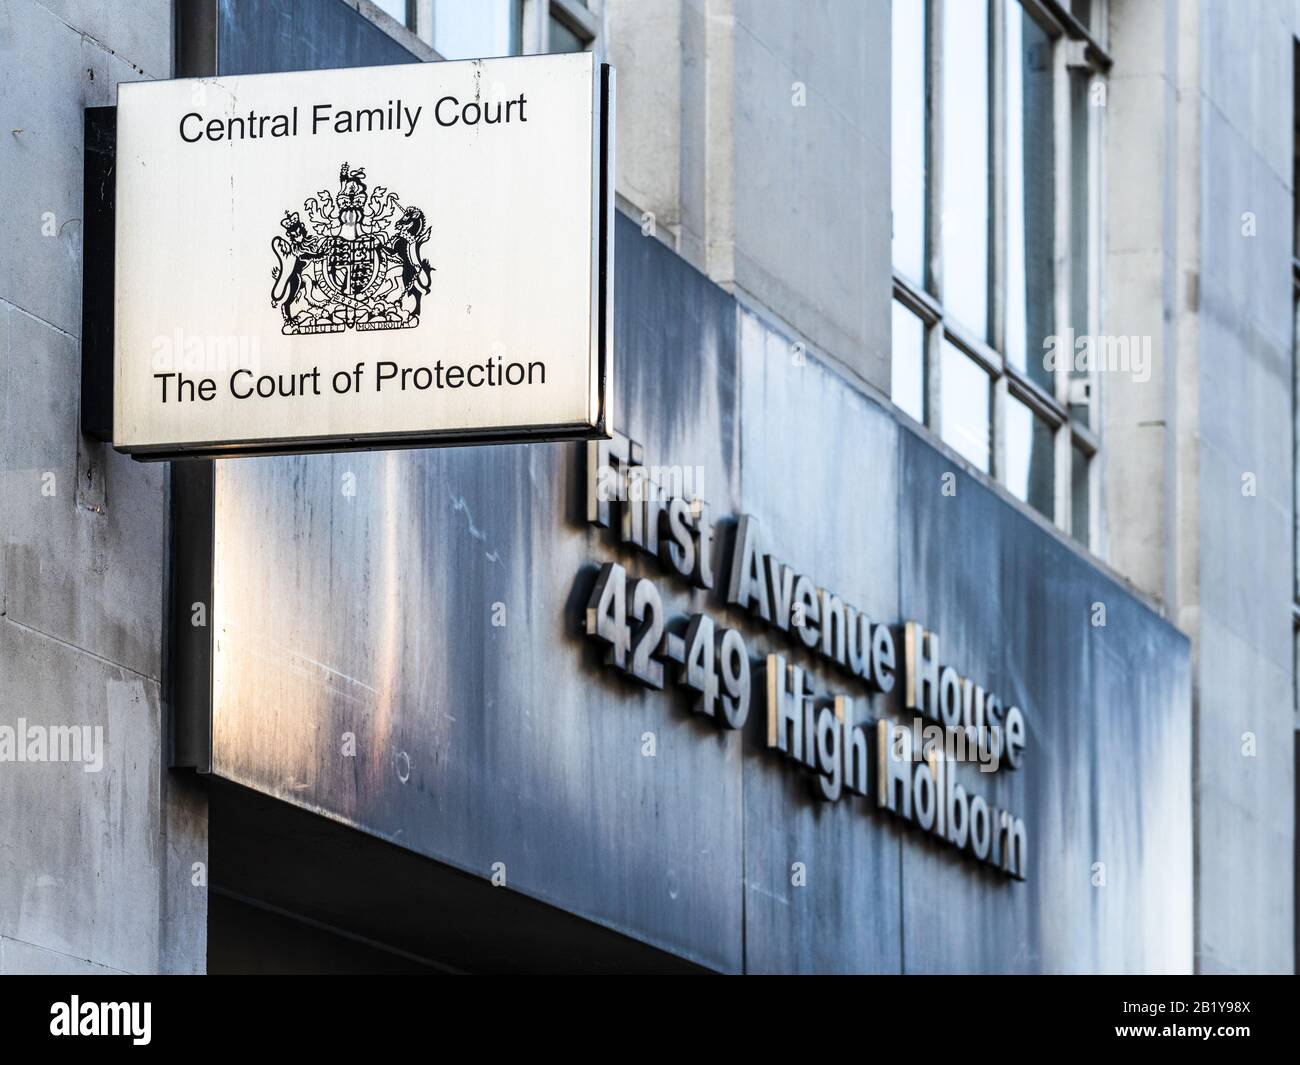 Cour Centrale De La Famille Londres Et Cour De Protection Du High Holborn Central London - Central London Family Court Banque D'Images